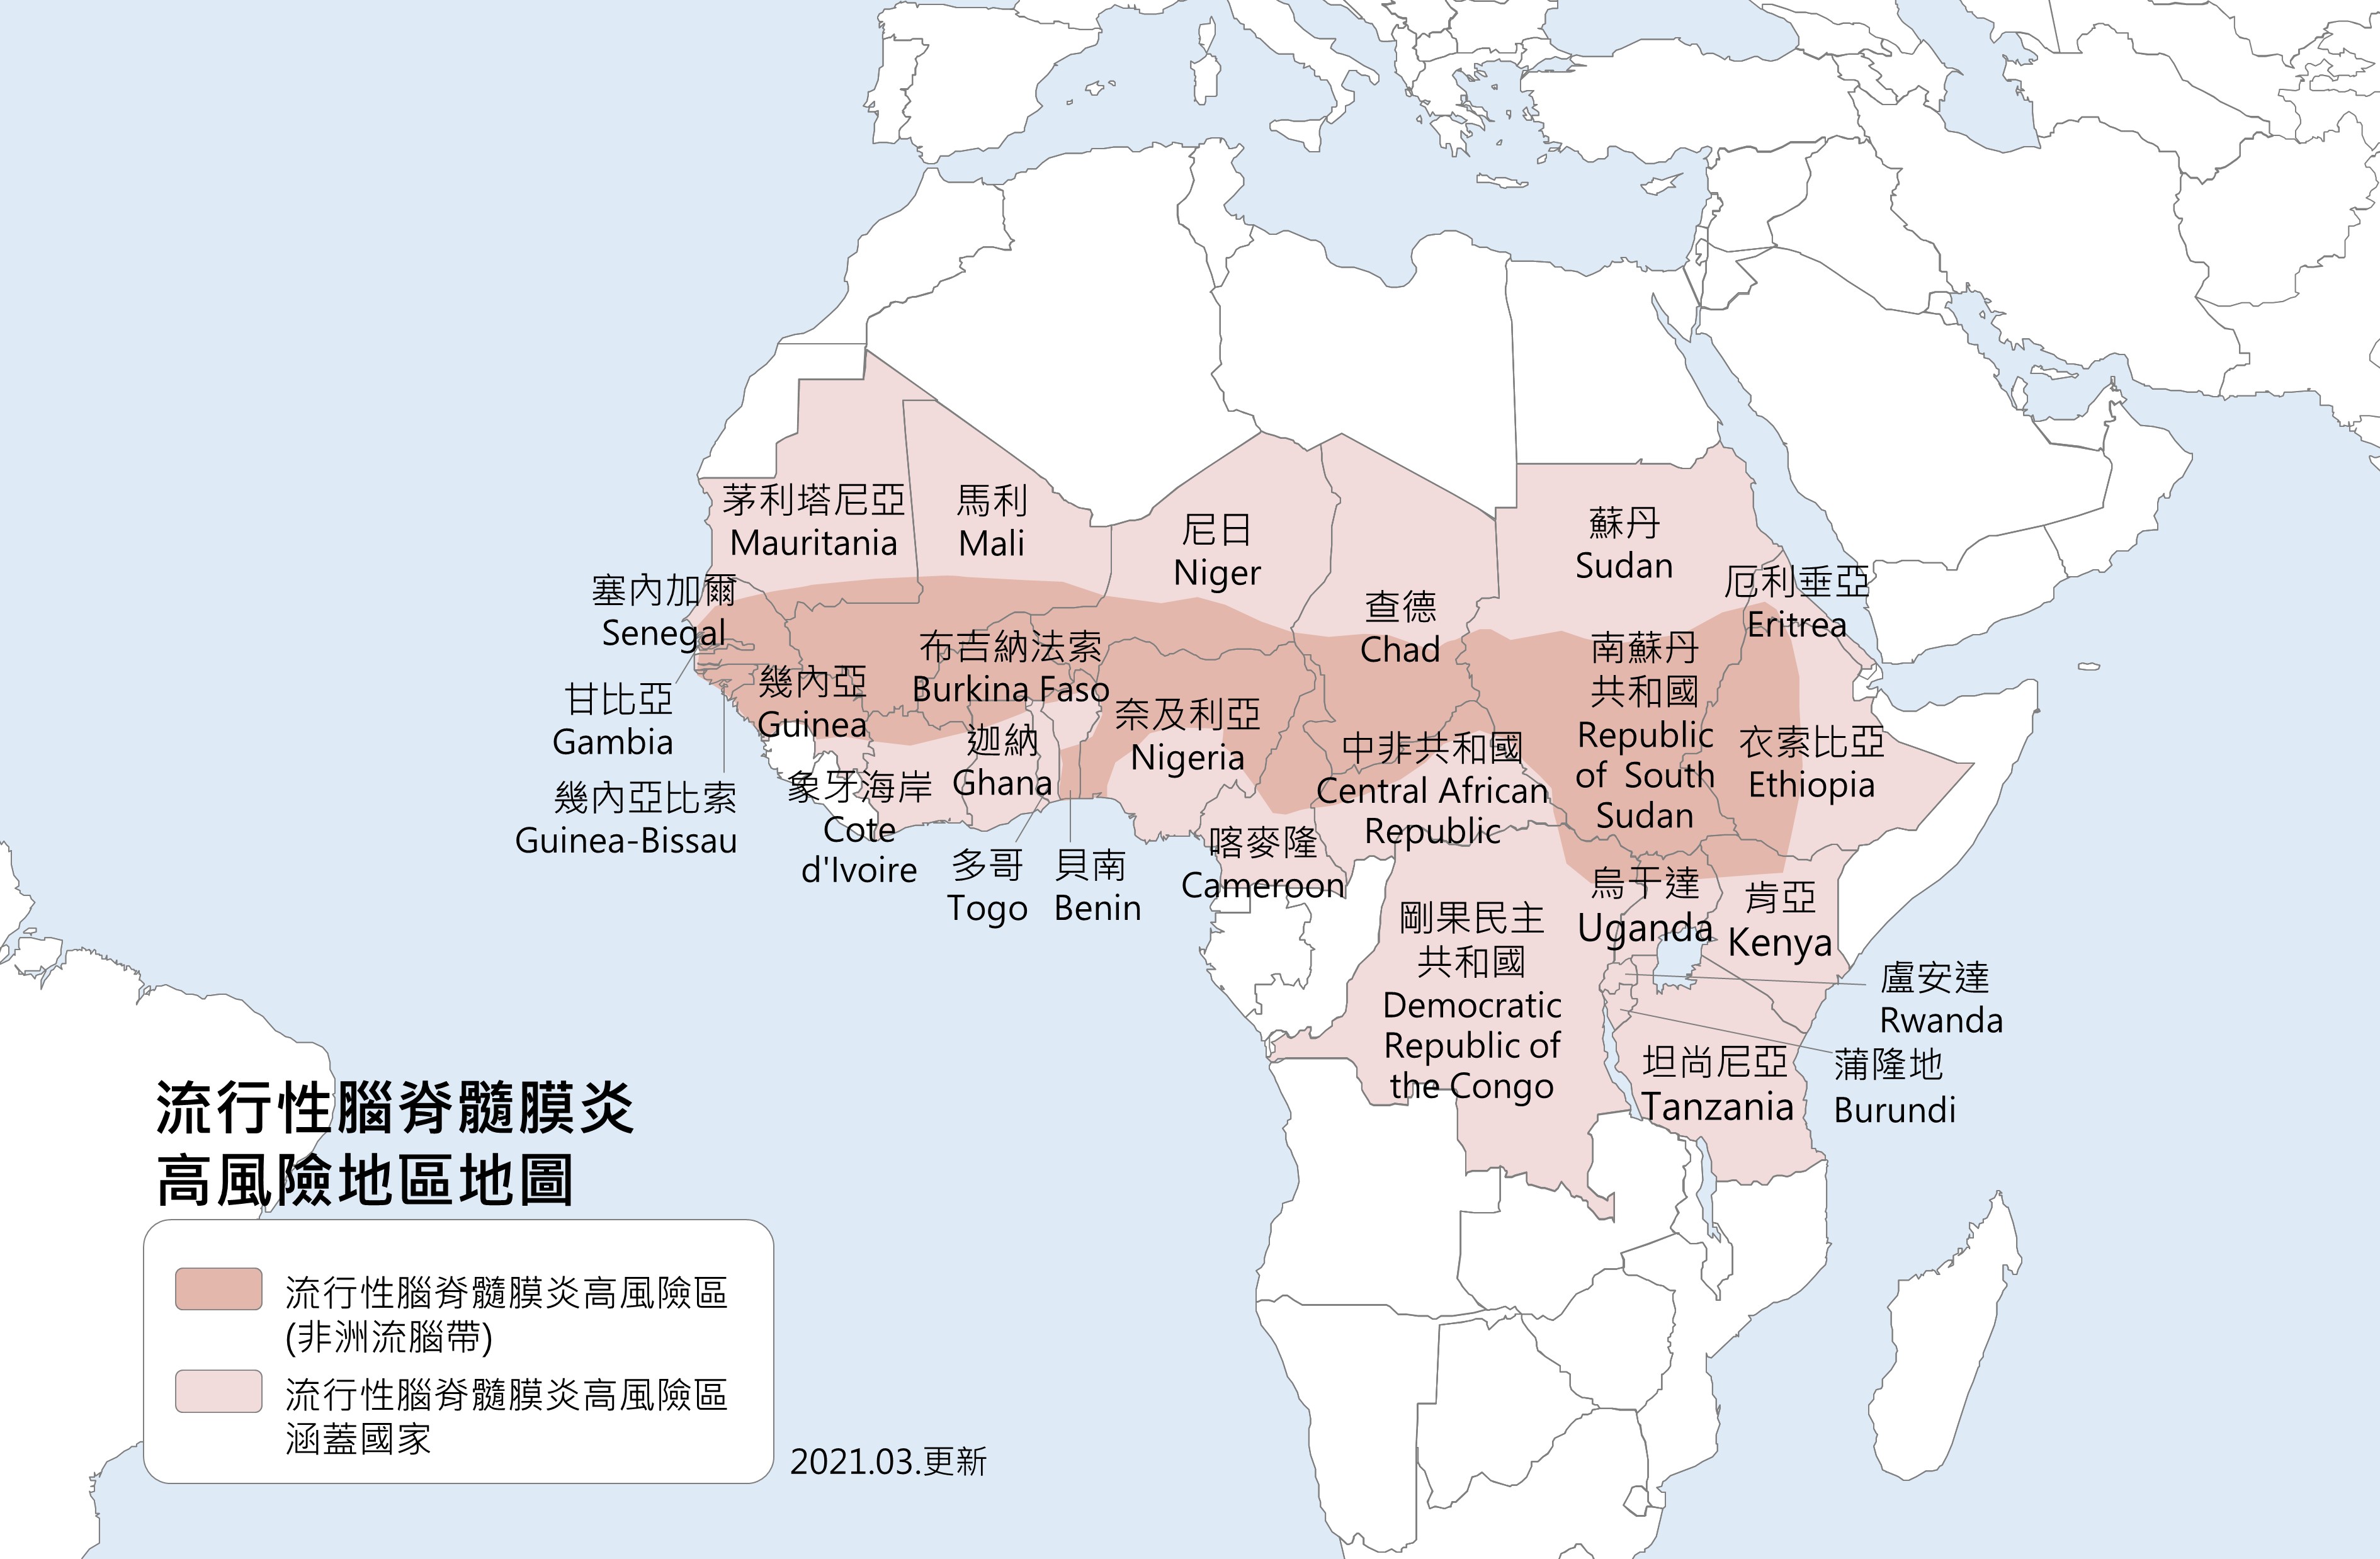 流行性腦脊髓膜炎高風險地區地圖說明如下